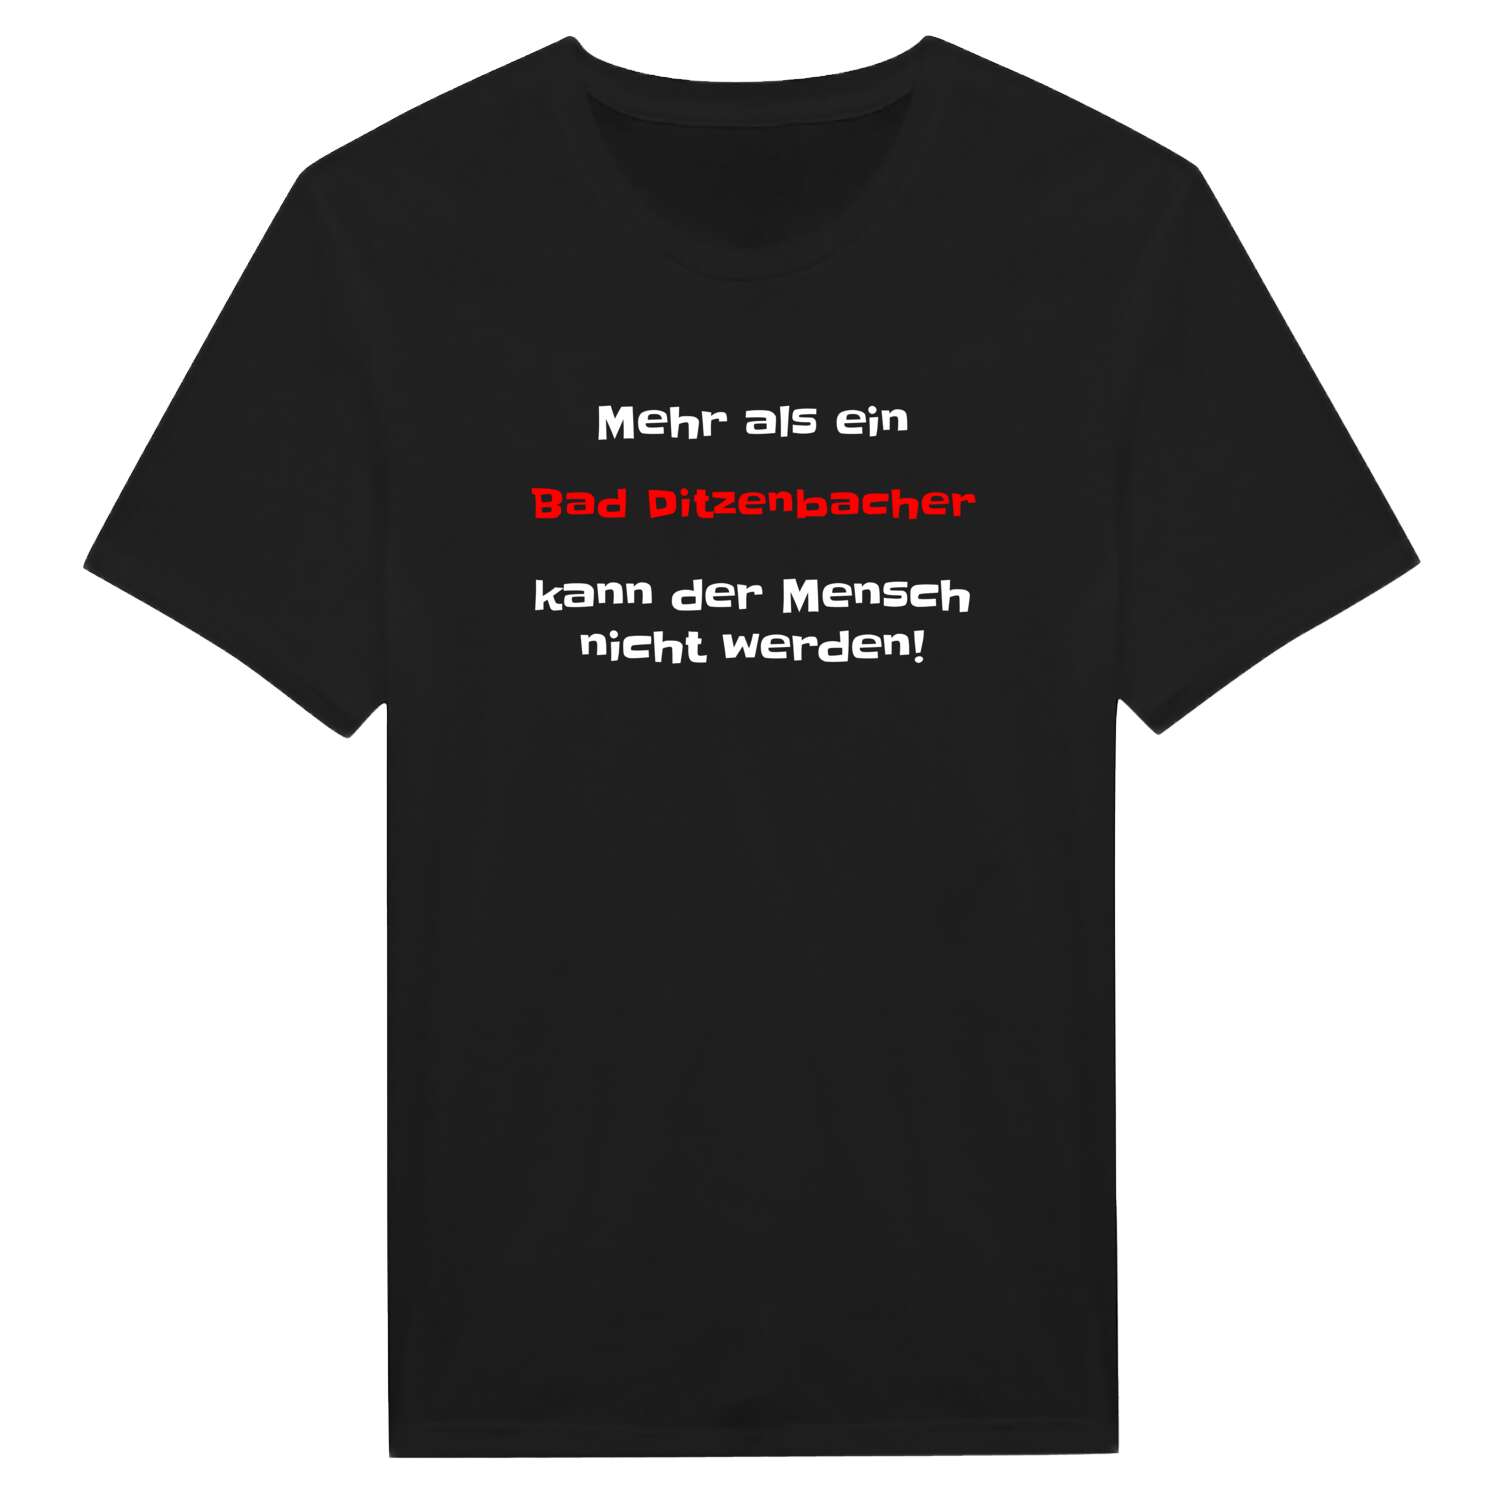 Bad Ditzenbach T-Shirt »Mehr als ein«